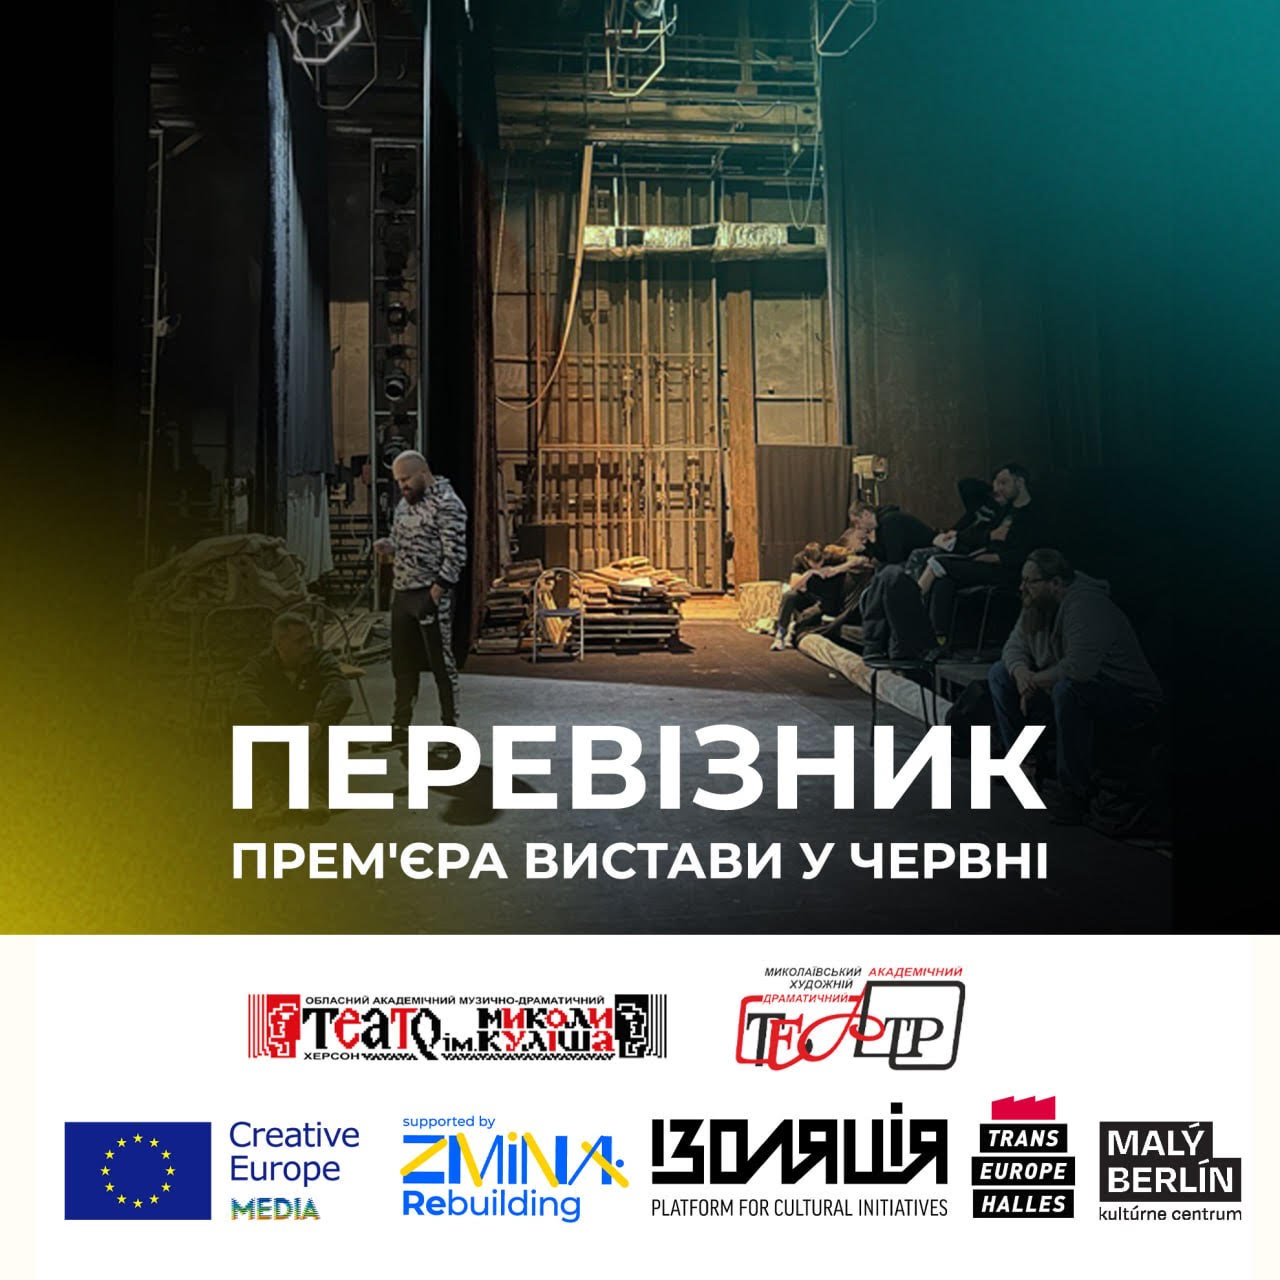 У червні відбудеться прем’єра спільної вистави херсонського та миколаївського театрів «Перевізник»